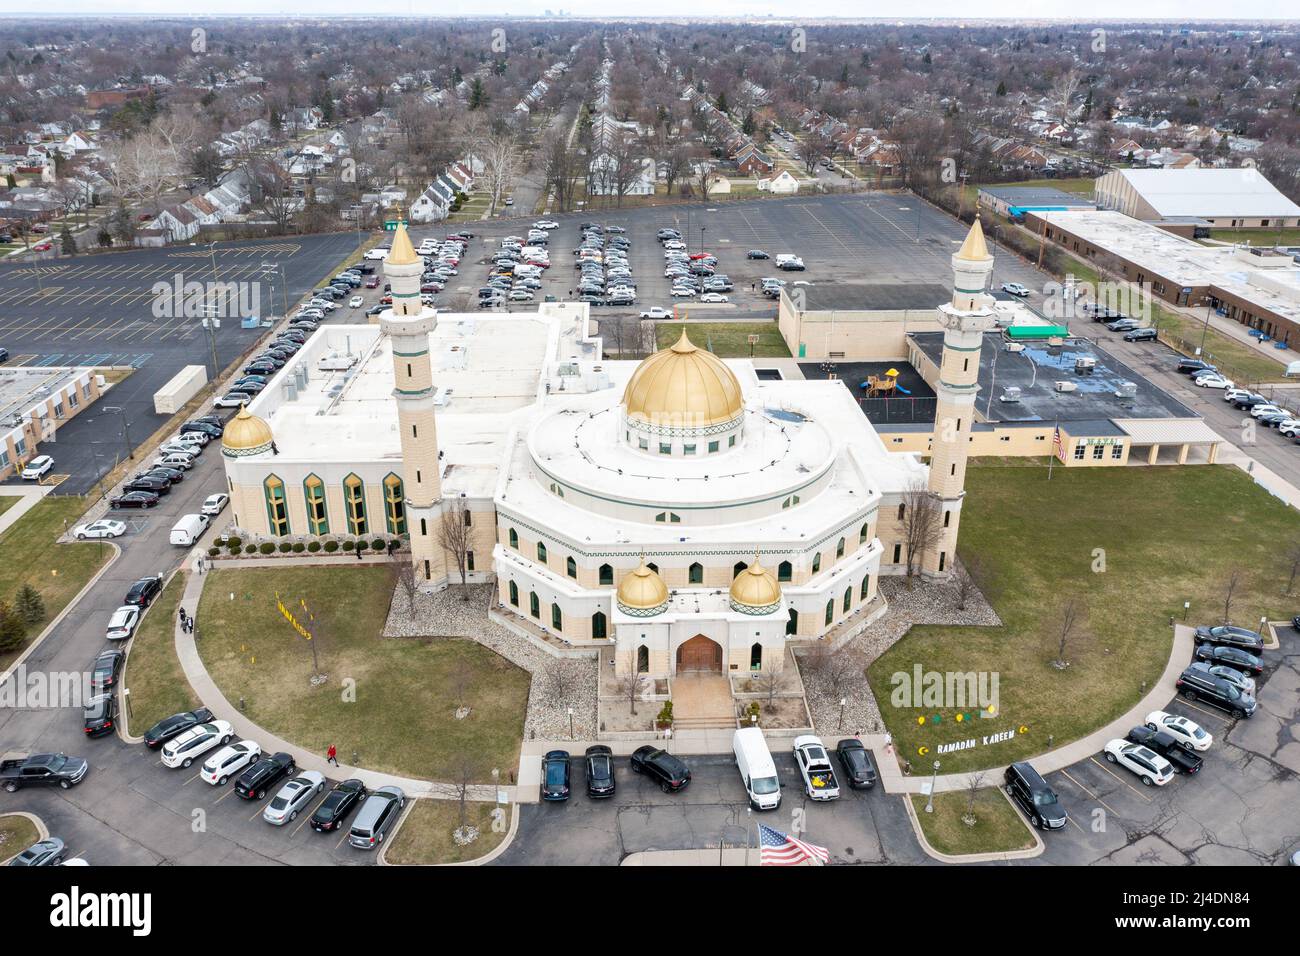 Centre islamique d'Amérique, Dearborn, MI, États-Unis Banque D'Images